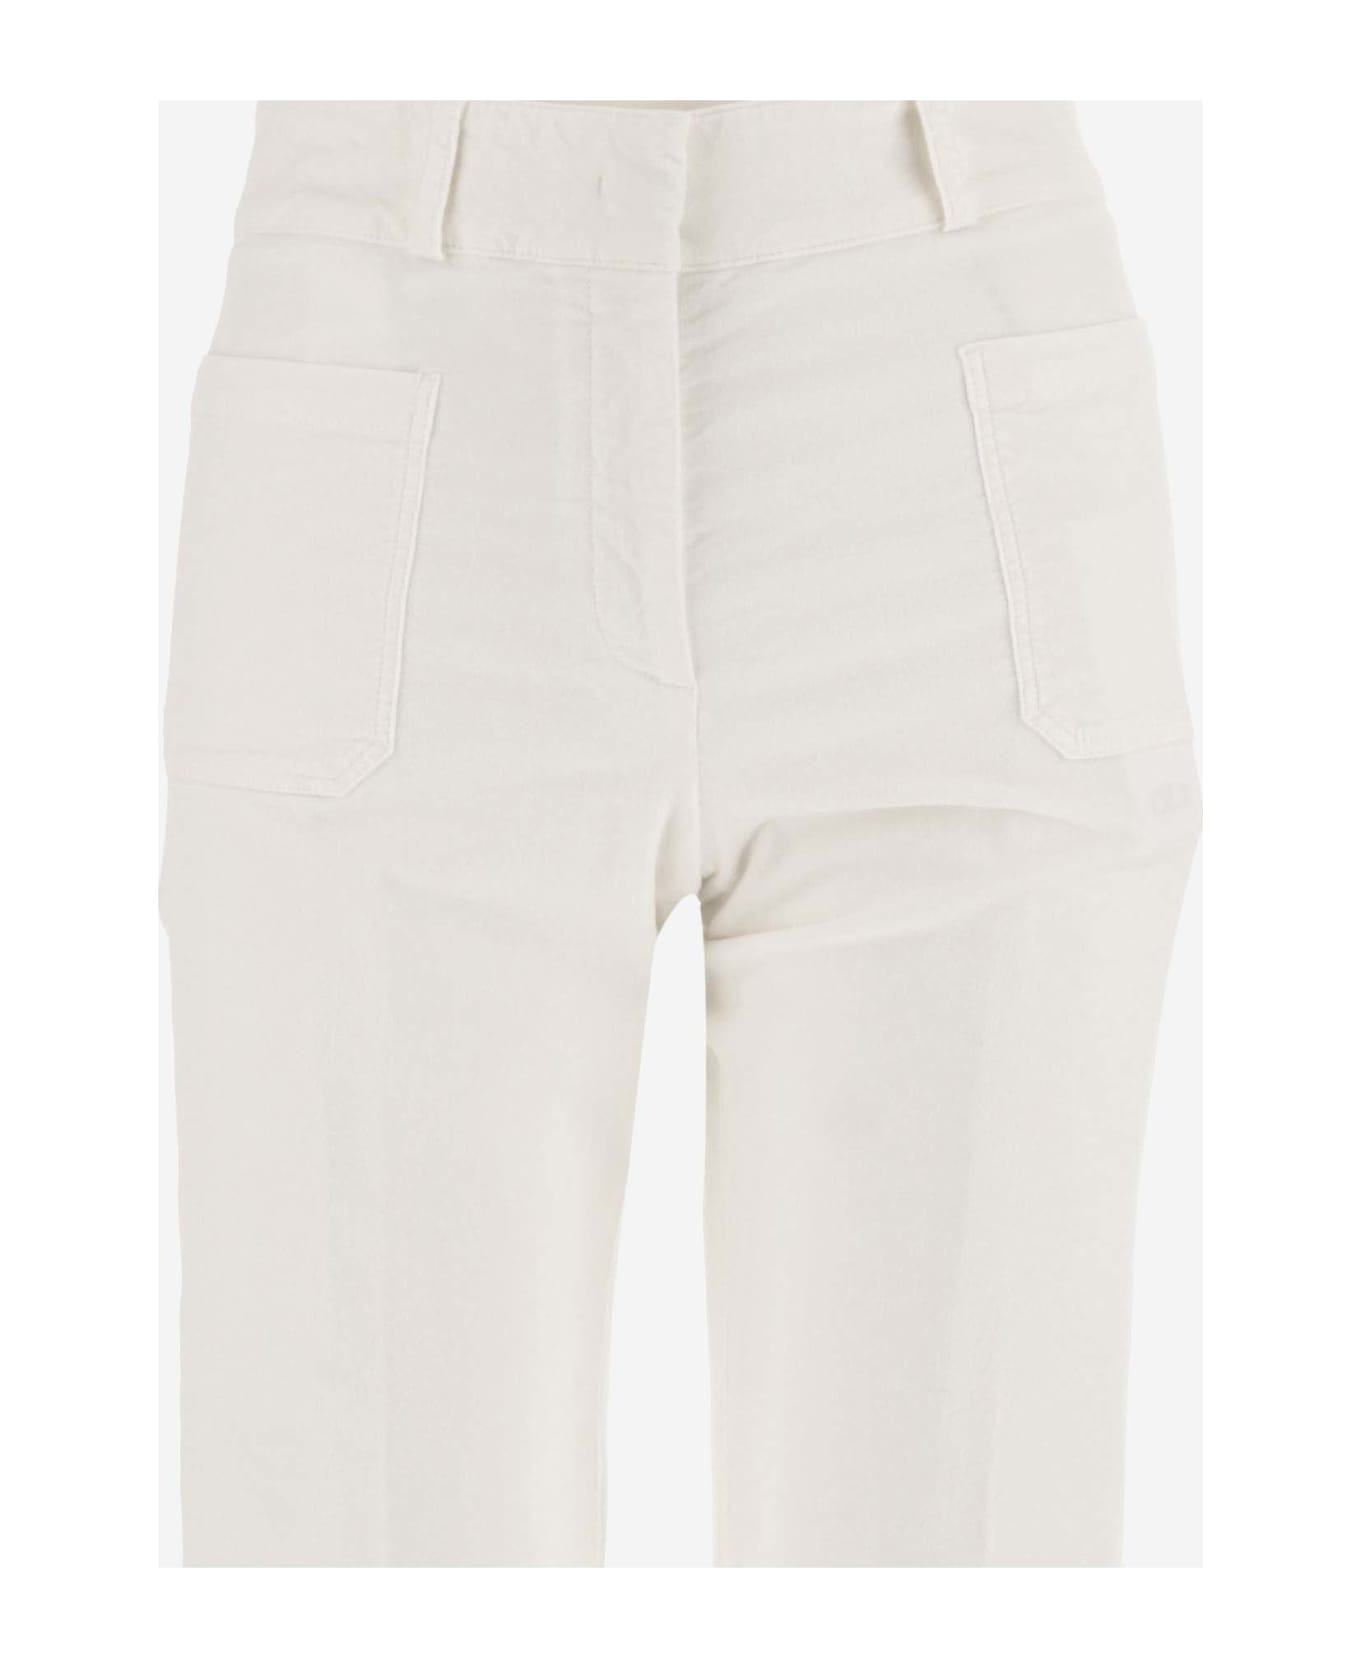 QL2 Stretch Cotton Wide Leg Pants - White